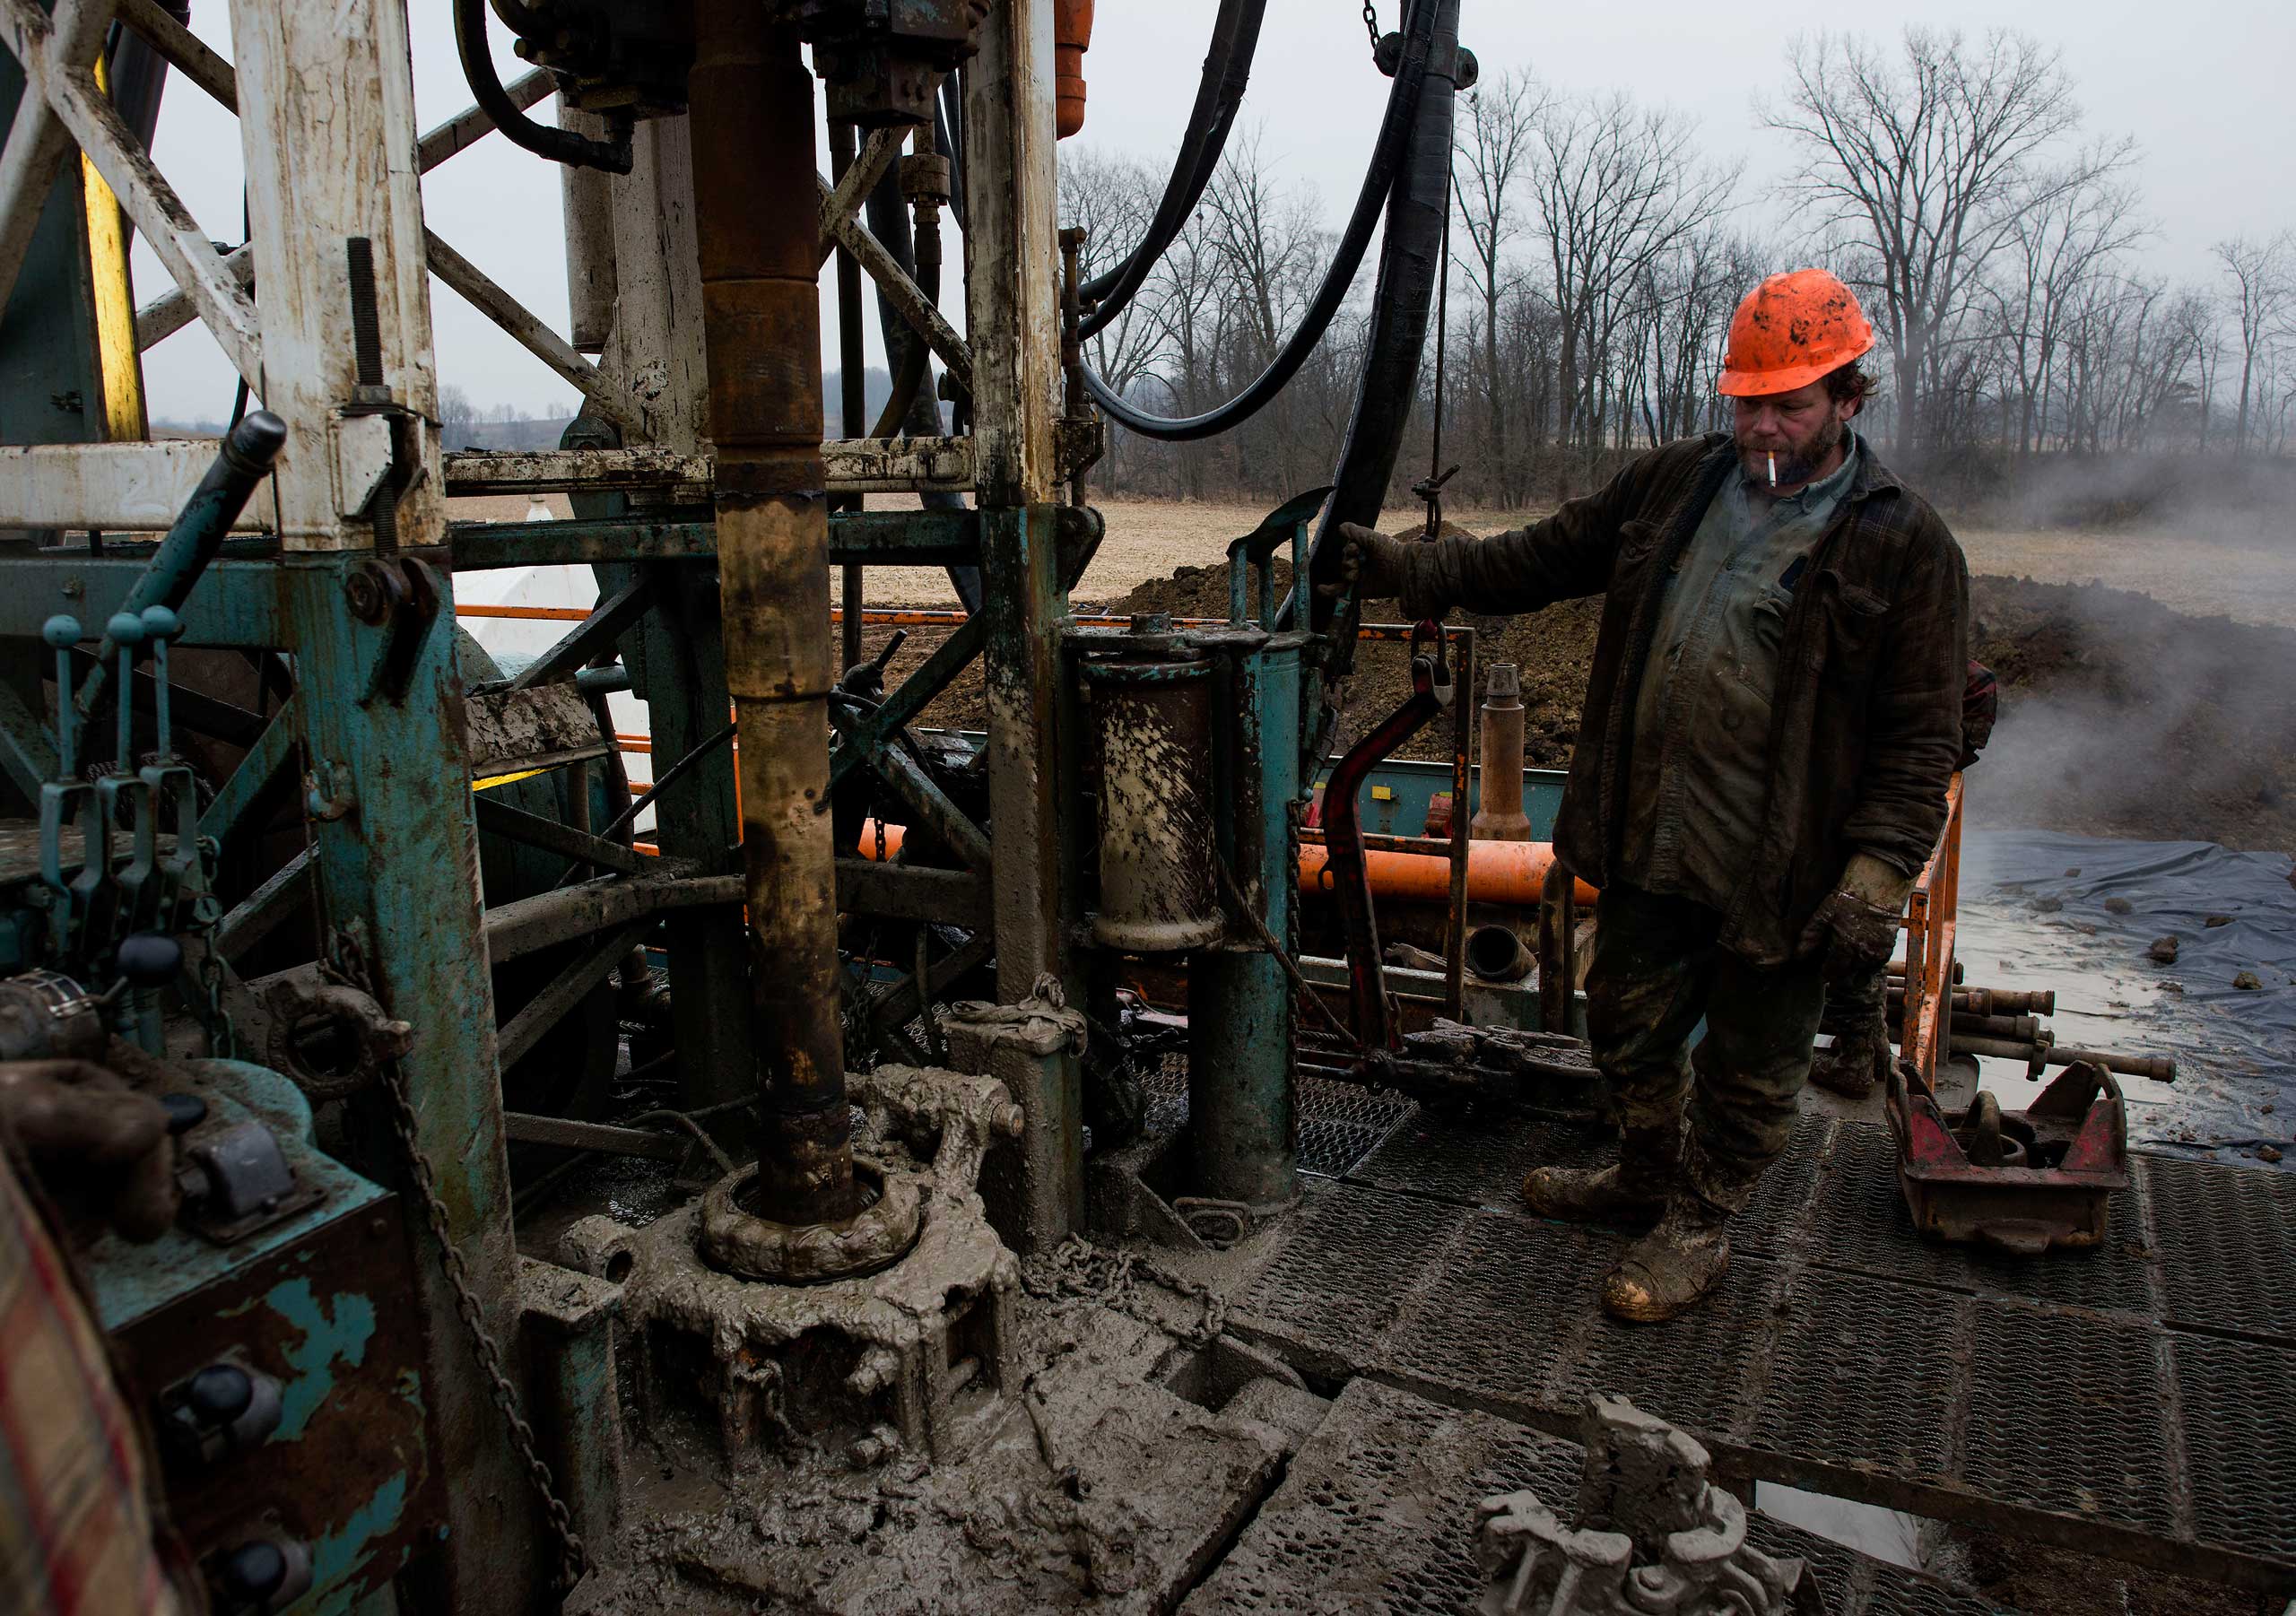 Ohio Oil Fracking